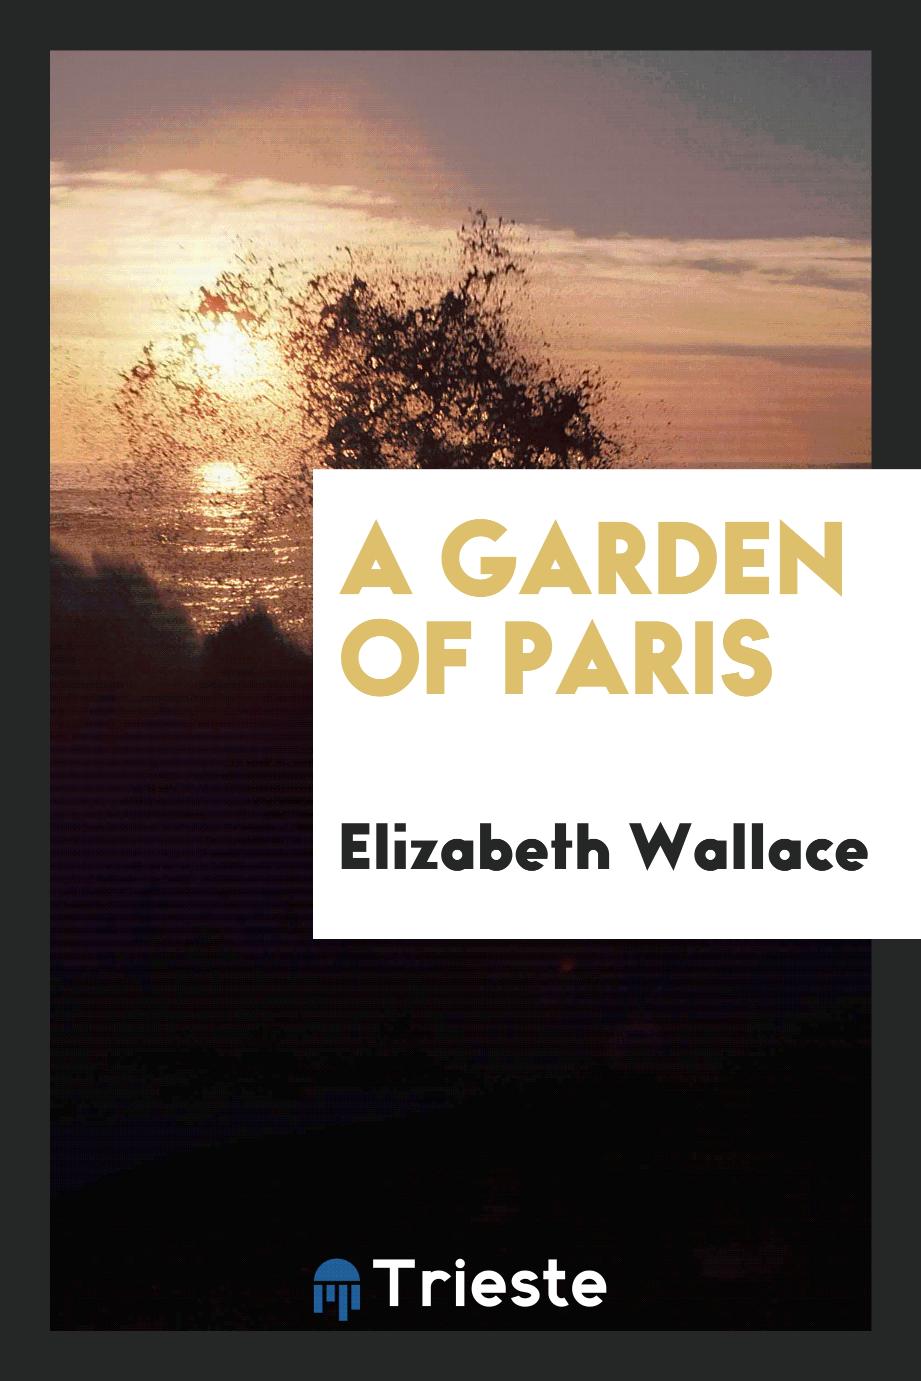 A garden of Paris